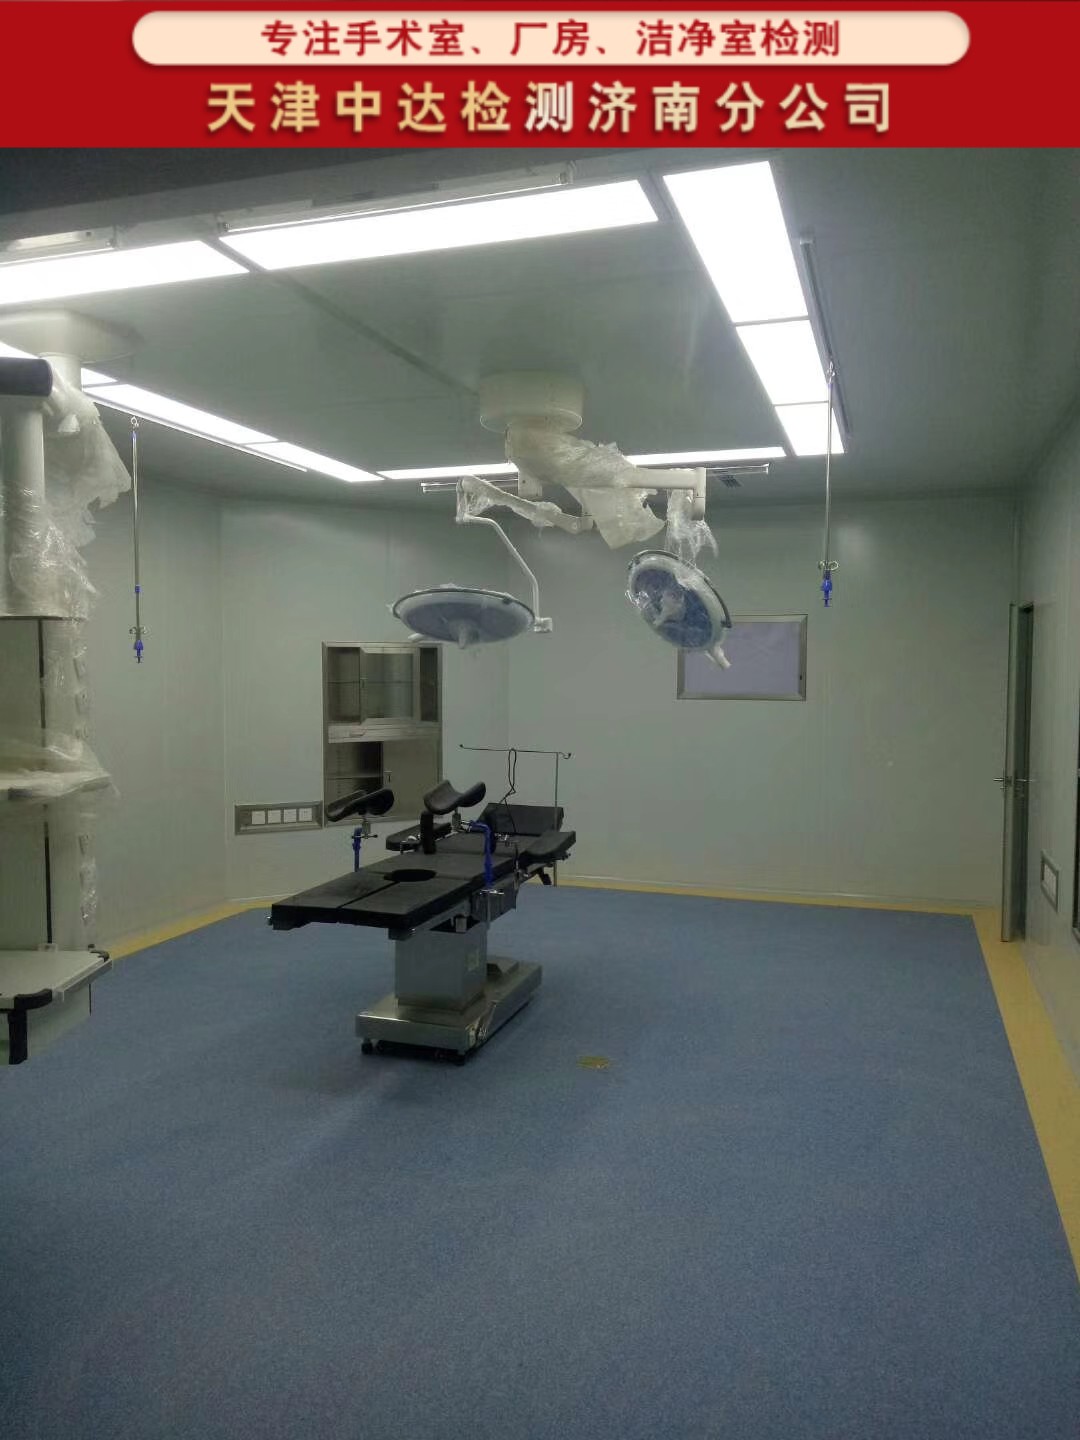 青岛平度市层流净化手术室无尘检测第三方-天津中达检测济南分公司